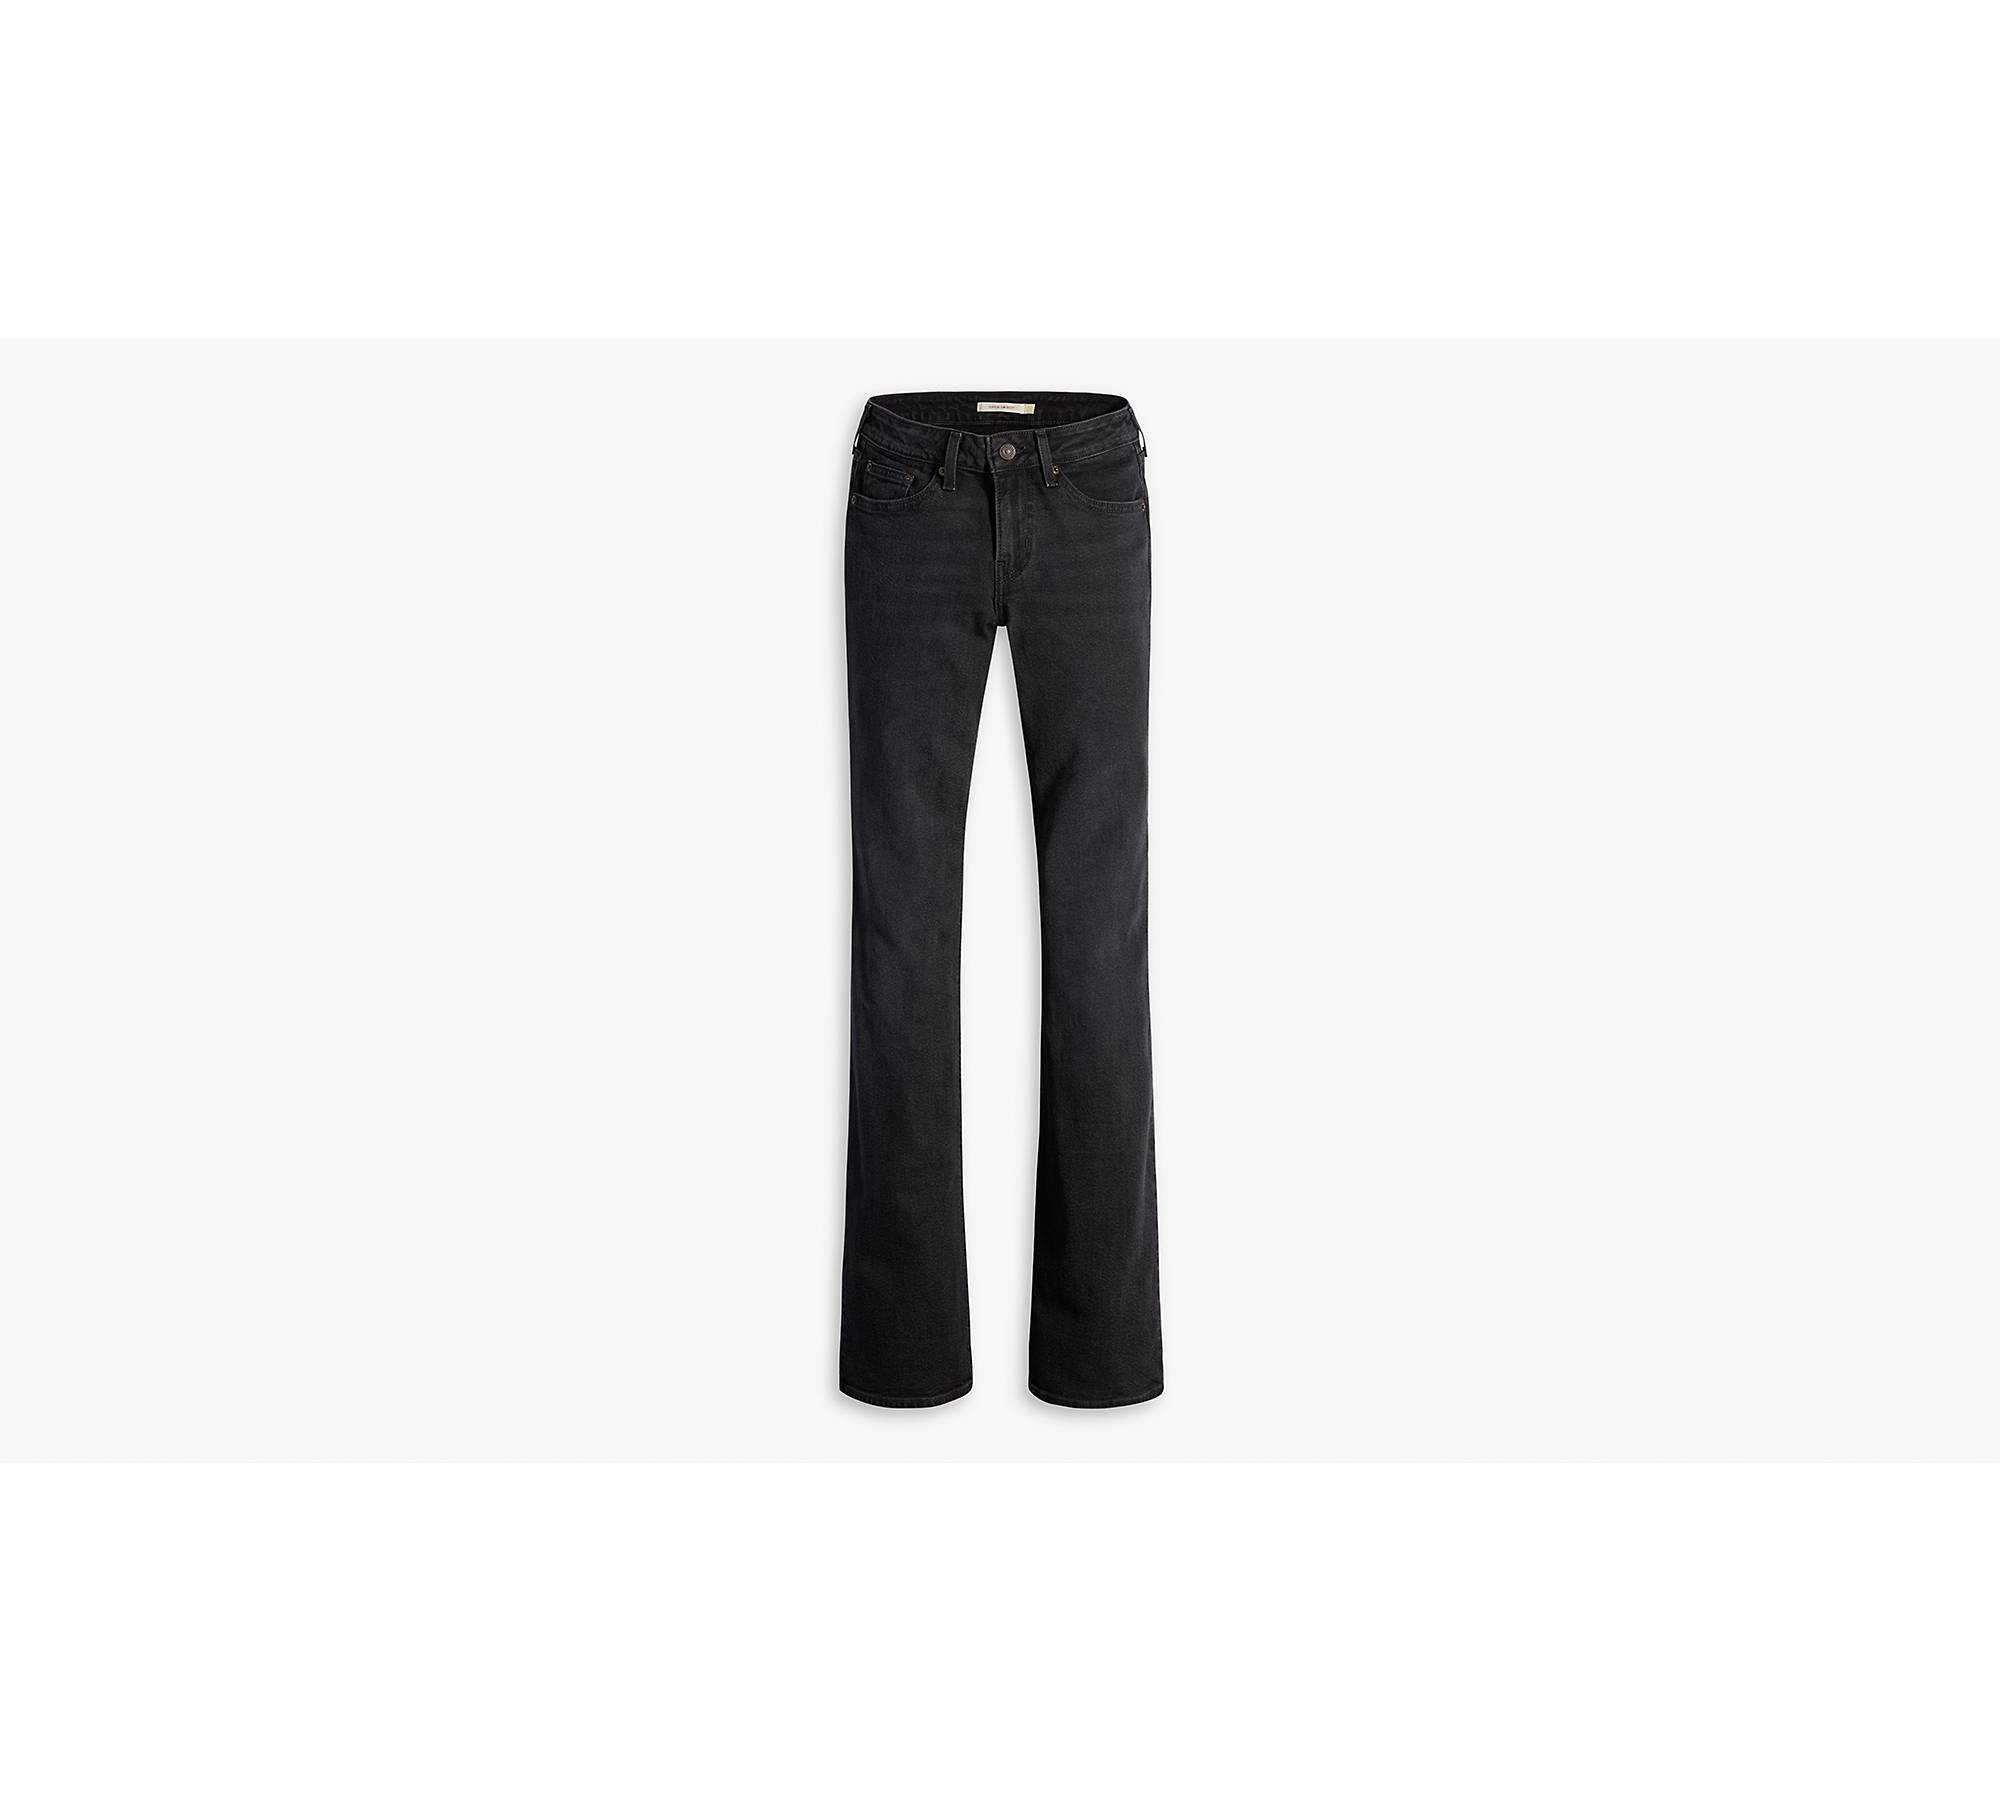 LC Lauren Conrad Bootcut Jeans Women's 4S Black Denim Low Rise 5-Pocket